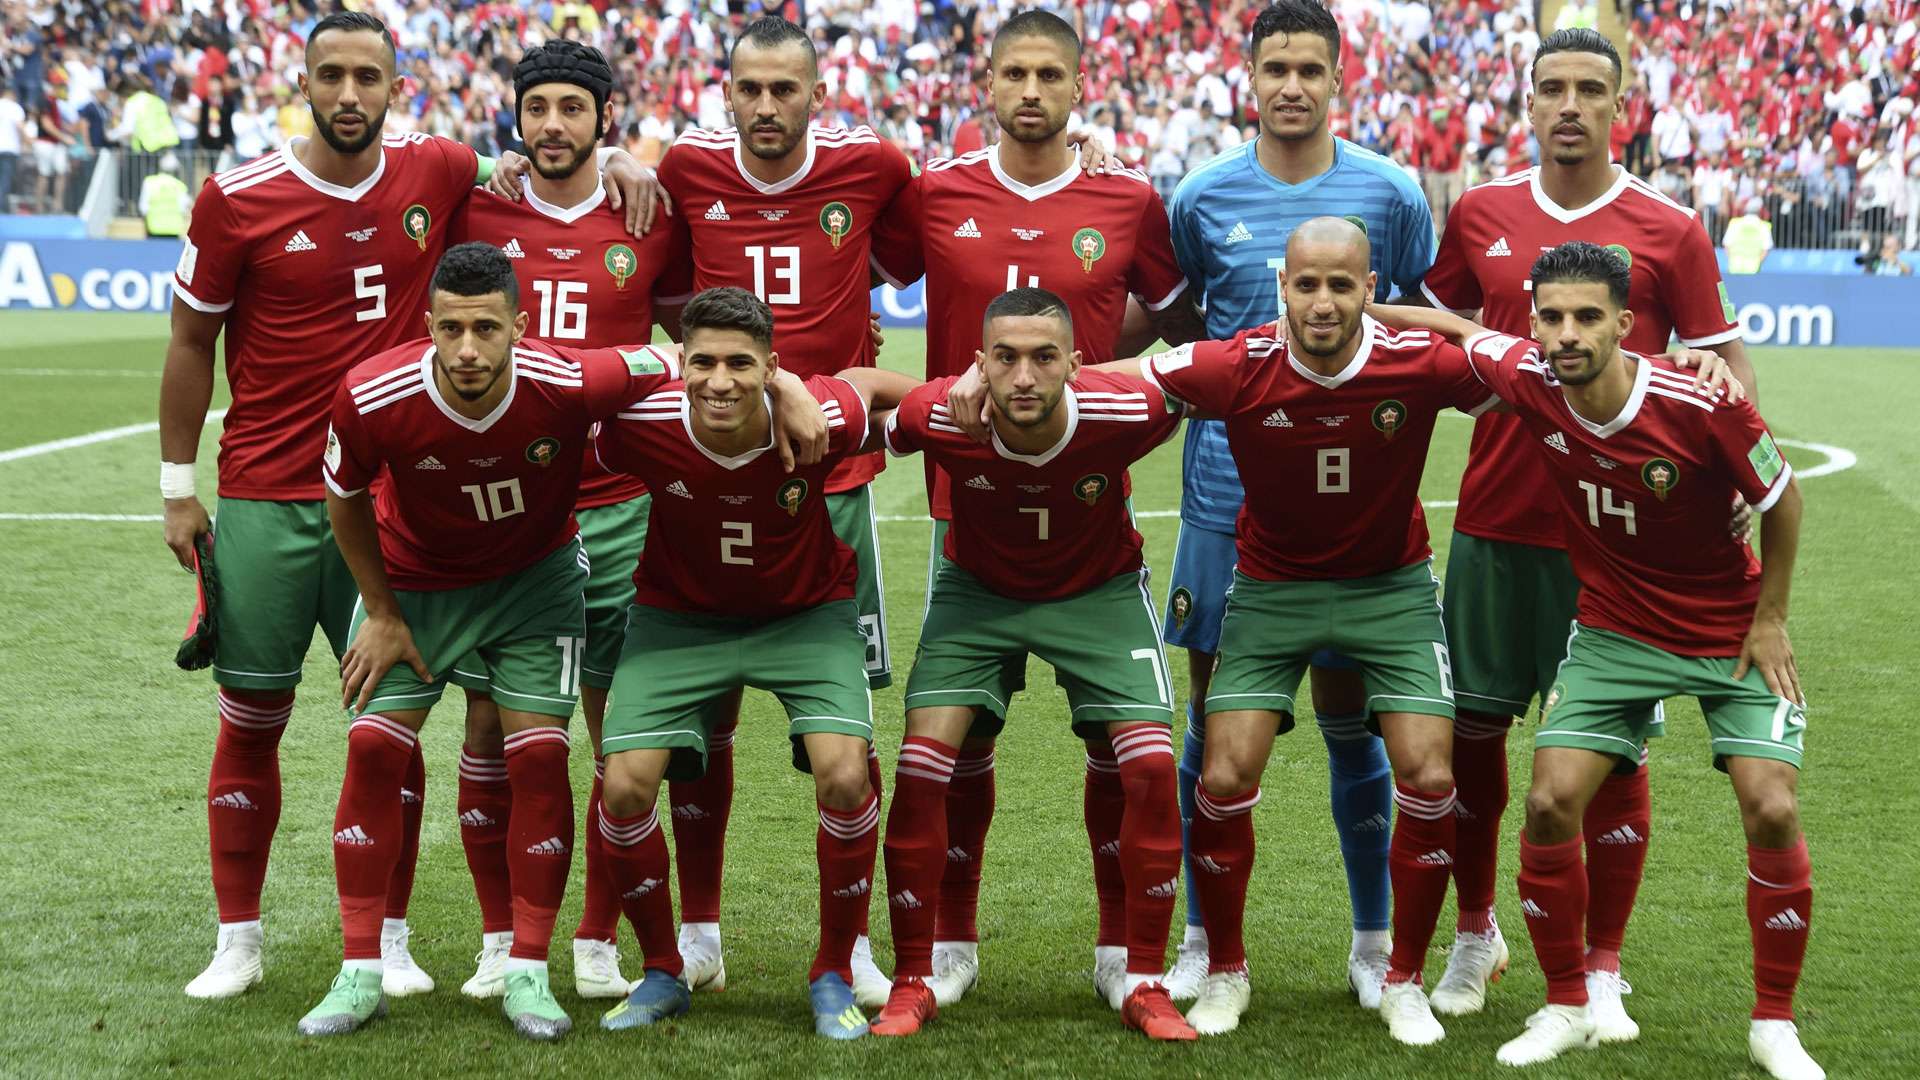 Marokko WM 2018: Kader, Spielplan, Ergebnisse, Highlights